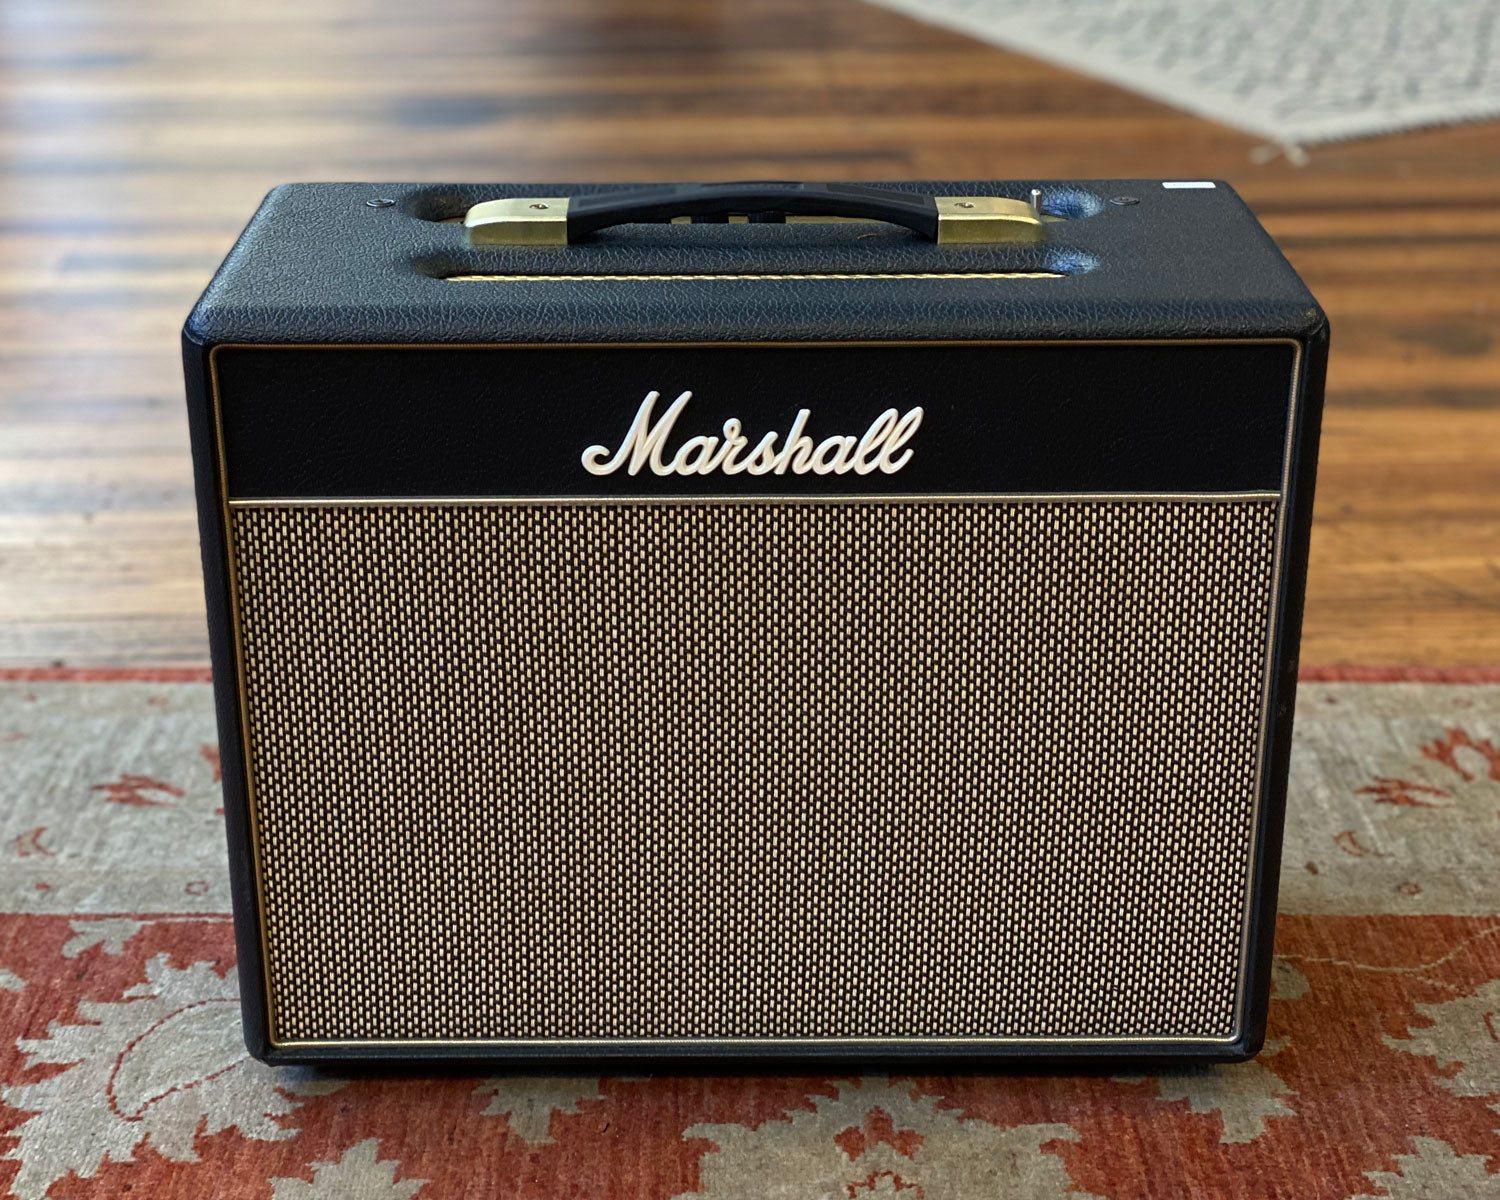 Marshall Class 5 Watt Class A Valve Amplifier – Found Sound